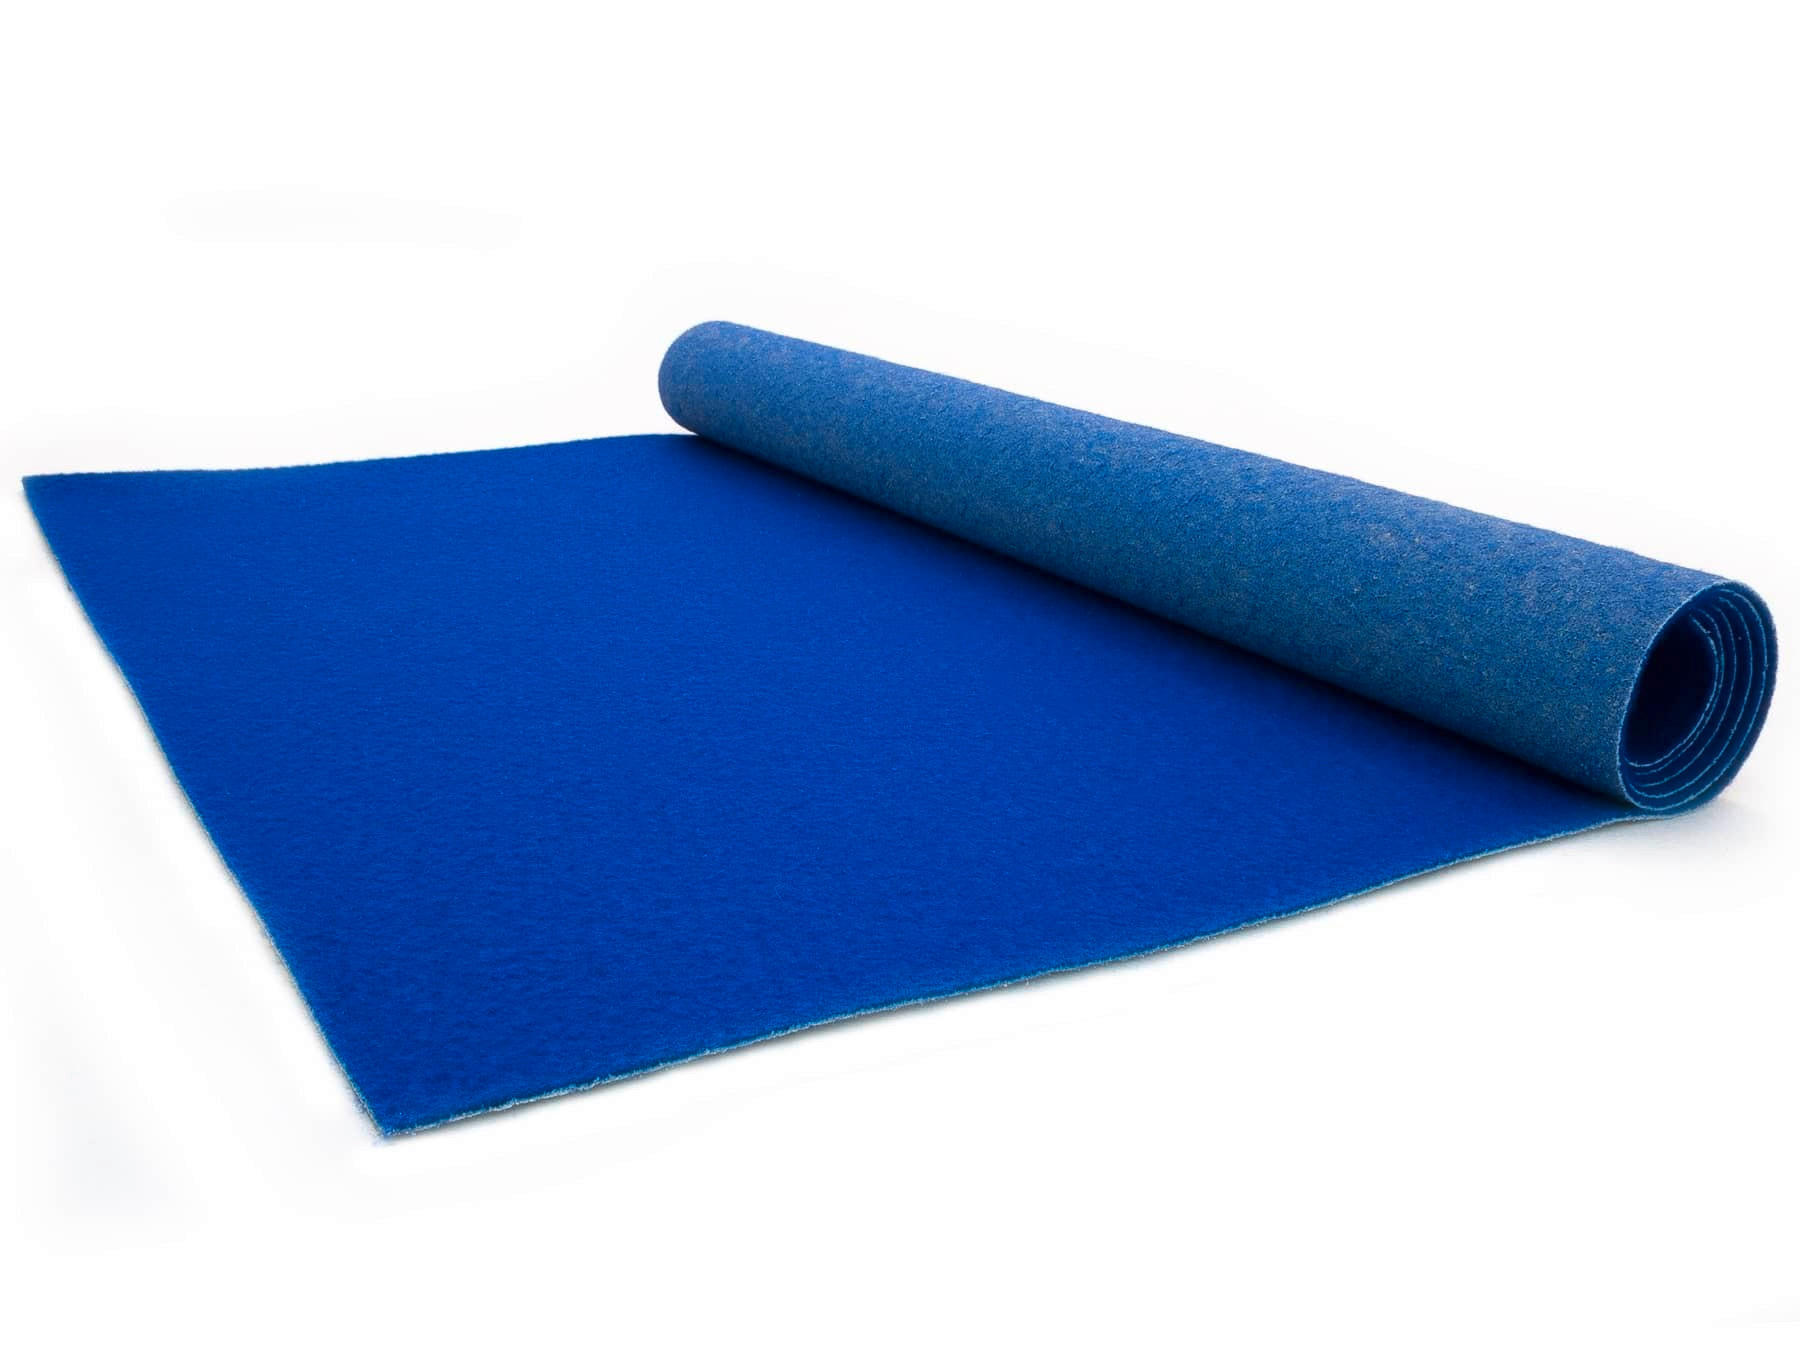 LÄUFER 100/200 cm Platea  - Blau, Basics, Textil (100/200cm)